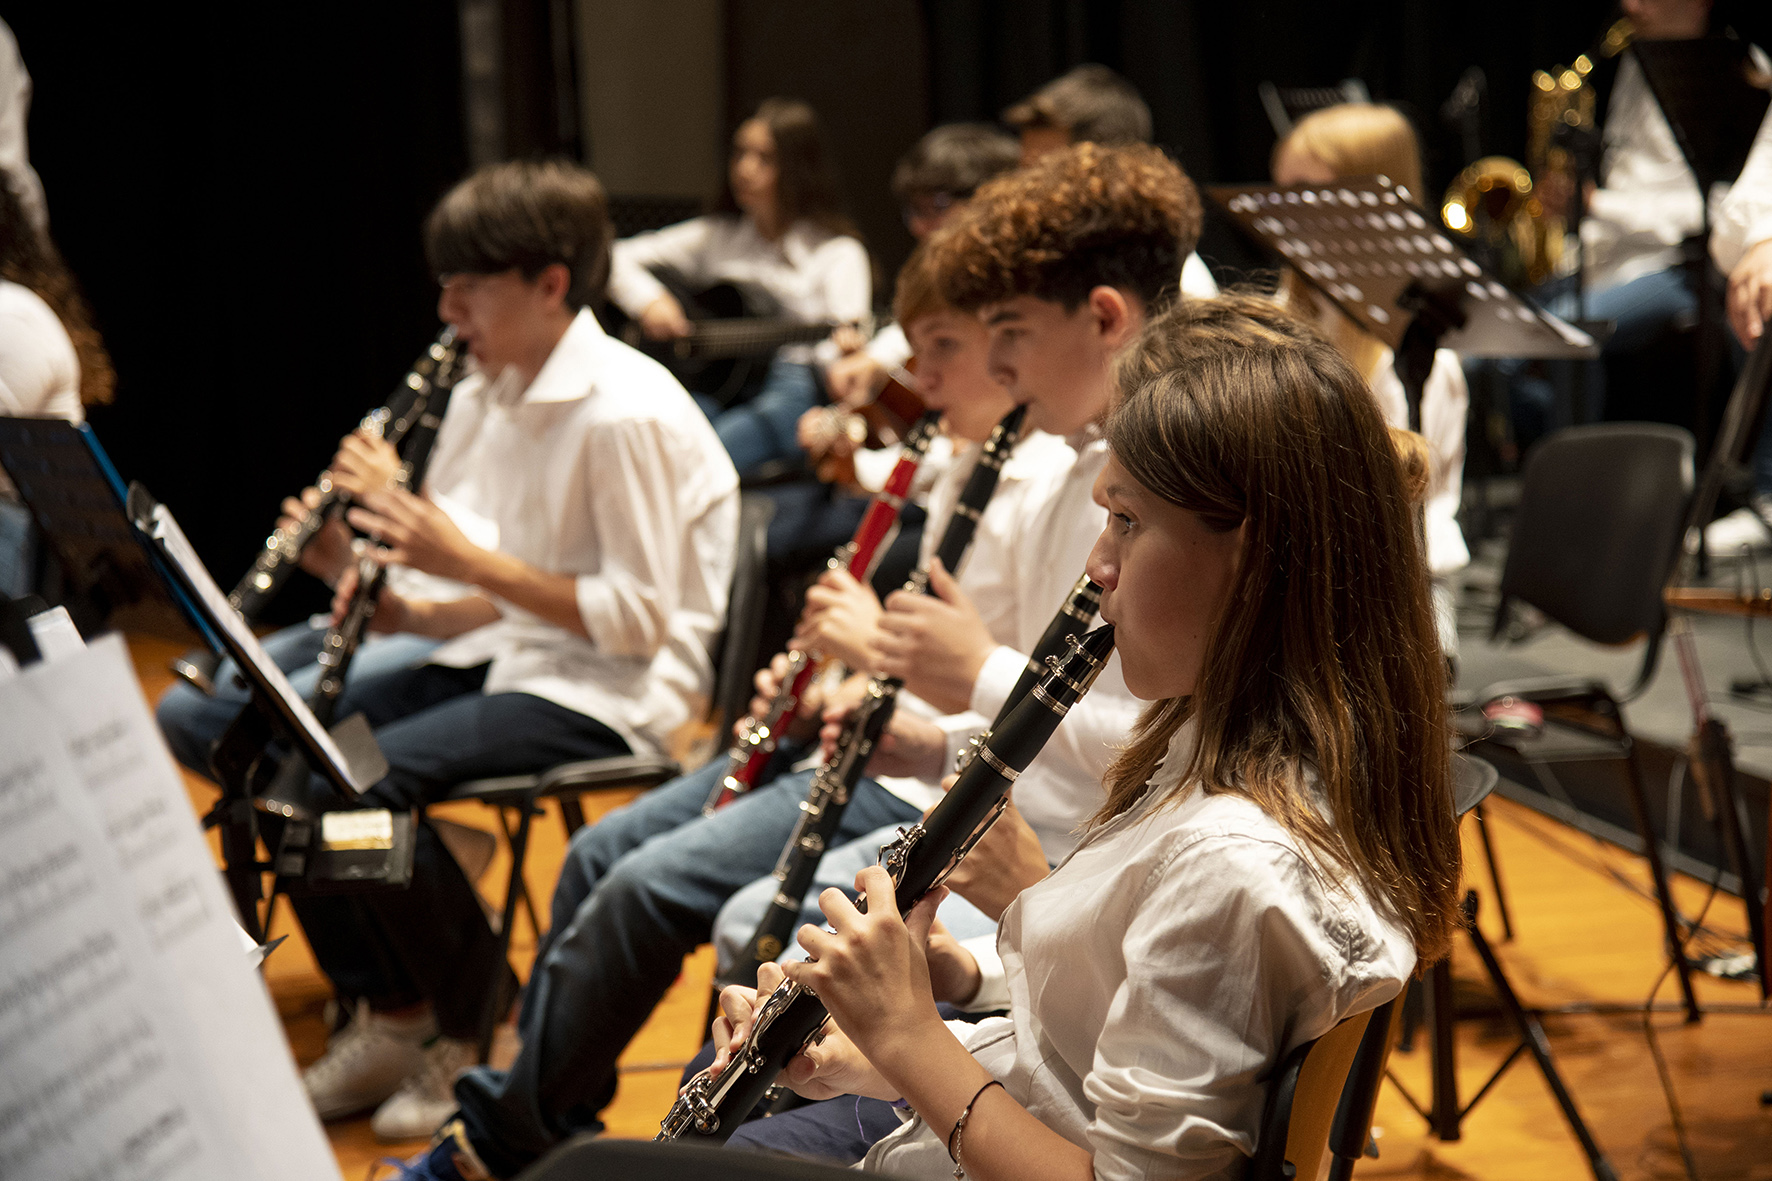 Torna l’Orchestra per la pace della scuola Parini, ospiti i jazzisti Nicola Giammarinaro, Roberto Gervasi e Dino Rubino